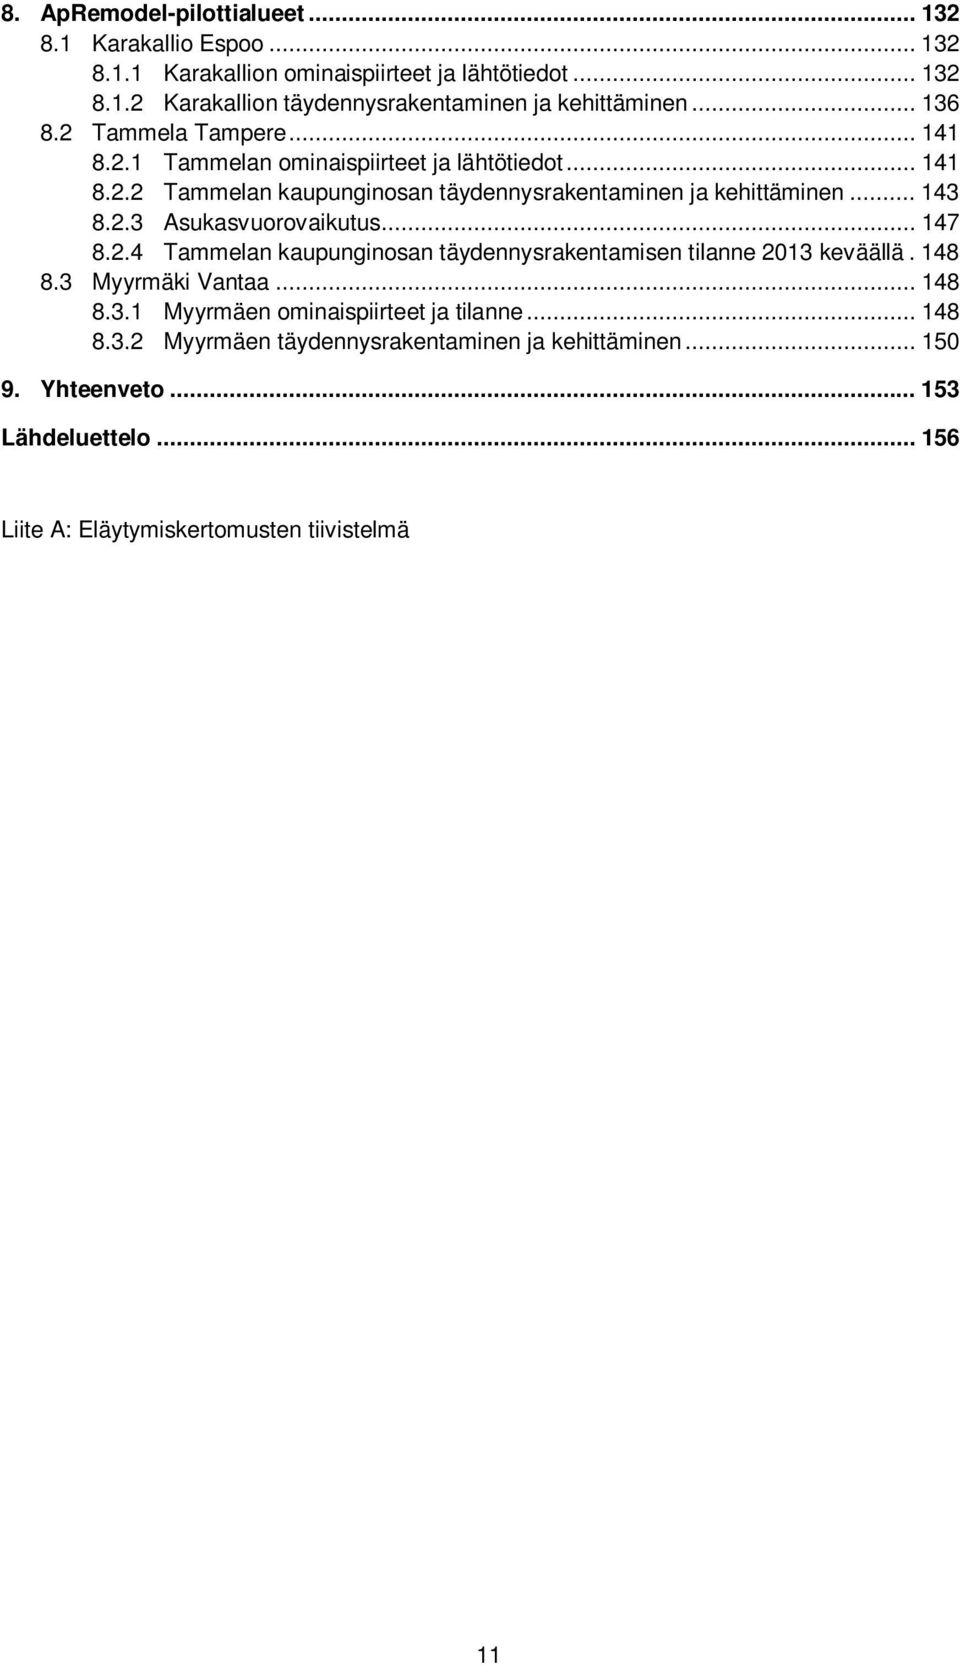 .. 147 8.2.4 Tammelan kaupunginosan täydennysrakentamisen tilanne 2013 keväällä. 148 8.3 Myyrmäki Vantaa... 148 8.3.1 Myyrmäen ominaispiirteet ja tilanne... 148 8.3.2 Myyrmäen täydennysrakentaminen ja kehittäminen.